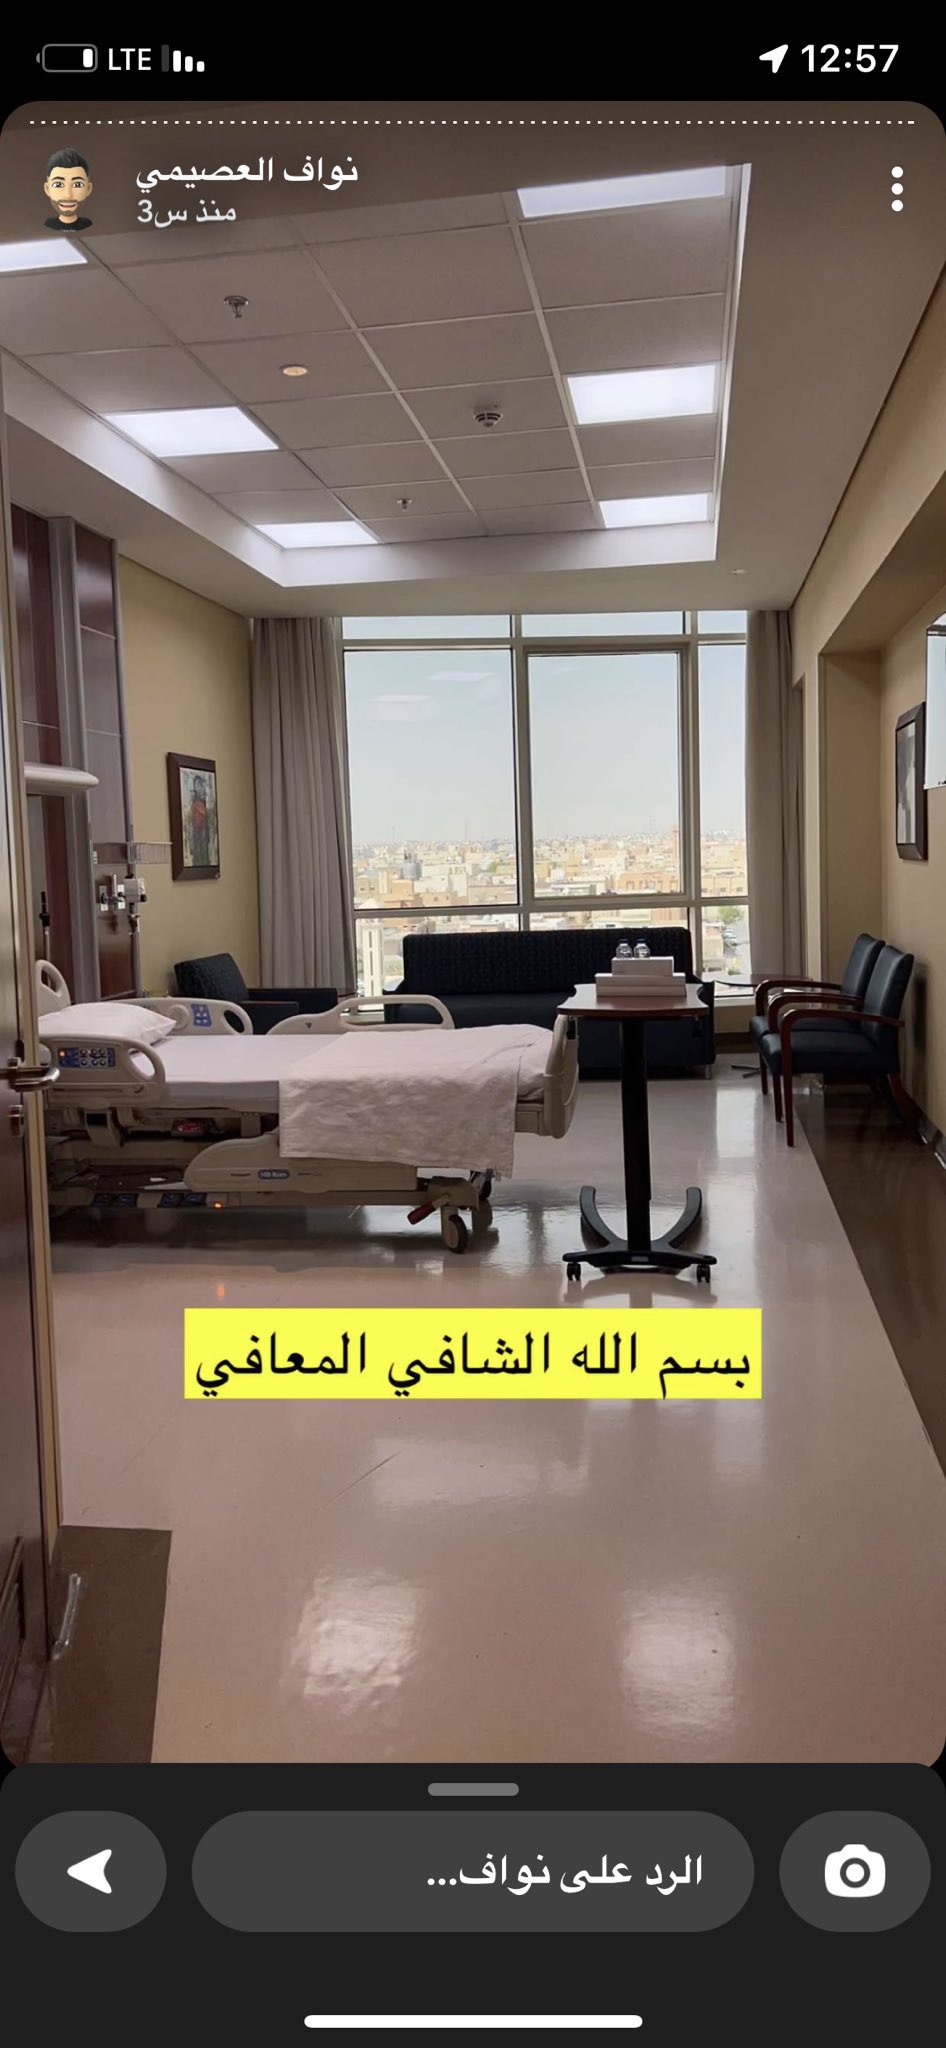 نواف العصيمي يشارك صورة غرفة العلاج من إحدى مشافي السعودية - مصدر الصورة: سناب شات